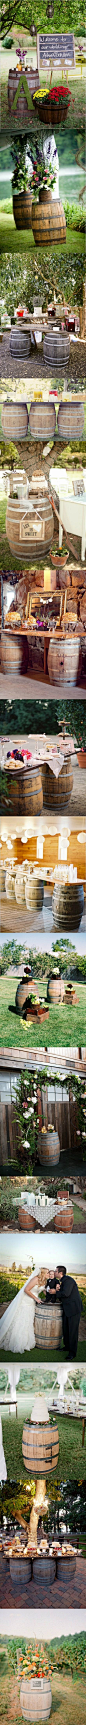 #婚礼布置#啤酒桶在婚礼上的妙用   超萌的甜品桌和餐桌台 更多: http://www.lovewith.me/share/detail/all/32990@北坤人素材